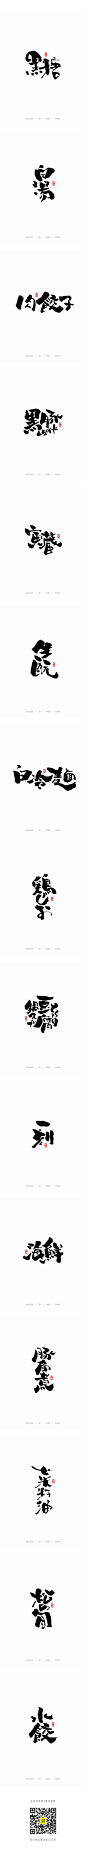 五月书法字体-字体传奇网-中国首个字体品牌设计师交流网